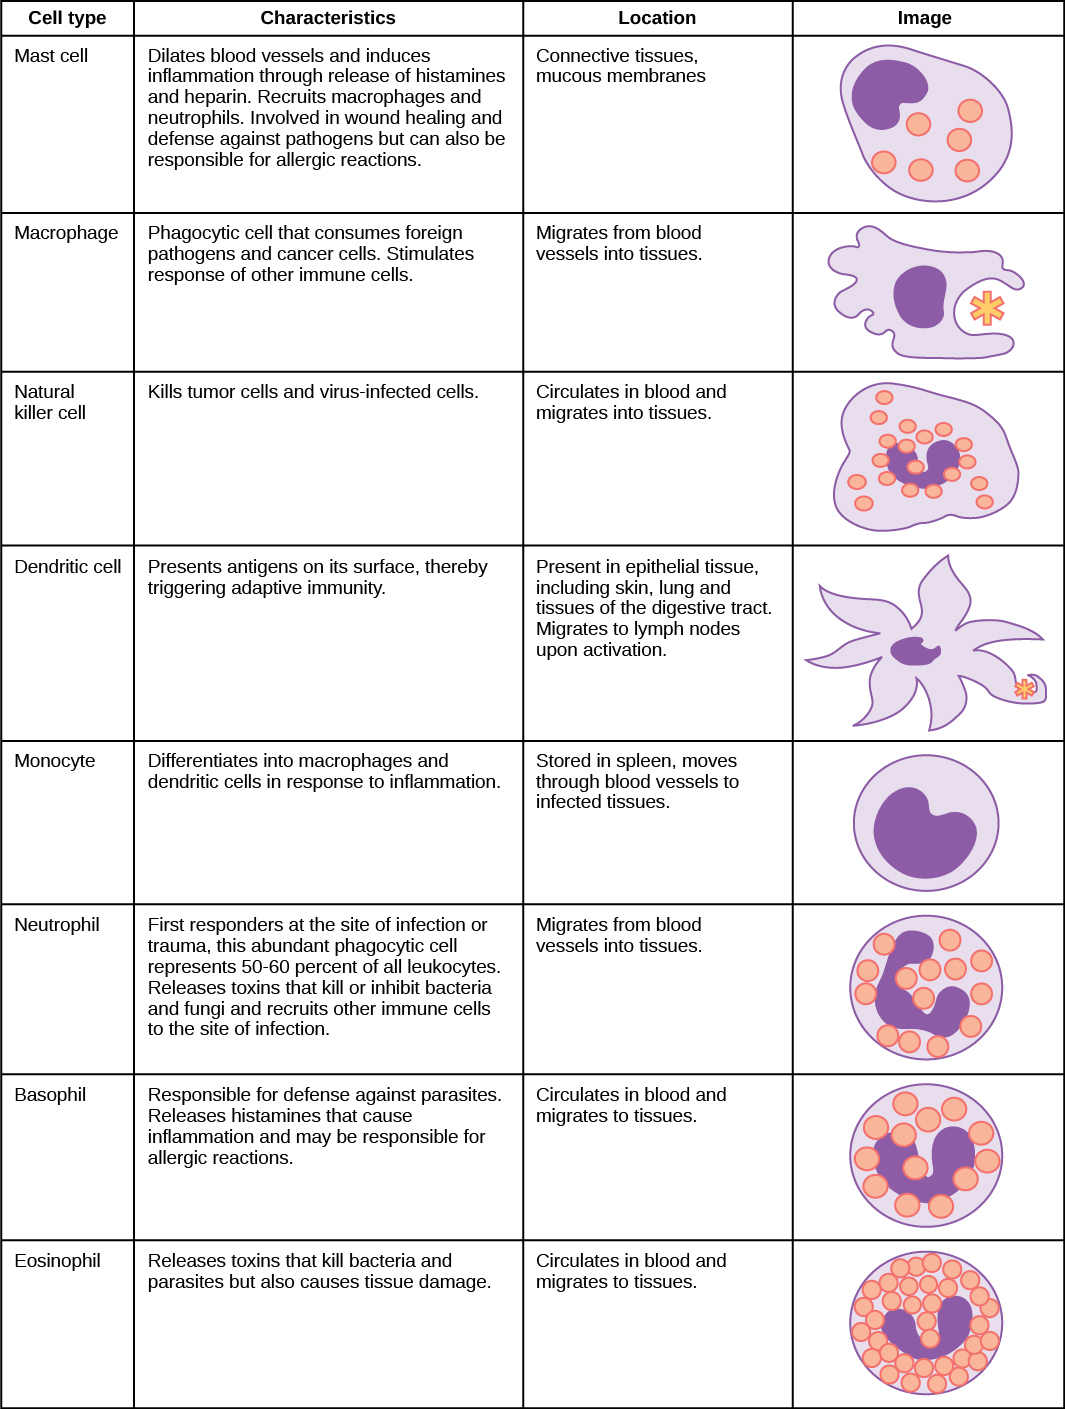 该表显示了各种类型的白细胞并描述了它们的功能。 肥大细胞、自然杀伤细胞、中性粒细胞、嗜碱性粒细胞和嗜酸性粒细胞都充满了颗粒，并具有马蹄形的核。 巨噬细胞形状不规则，有圆形核。 树突有星状的突起物和一个马蹄形的小核。 肥大细胞扩张血管，通过释放组胺和肝素诱发炎症。 它们还会招募巨噬细胞和中性粒细胞，参与伤口愈合和对病原体的防御，但也可能导致过敏反应。 它们存在于结缔组织和粘膜中。 巨噬细胞是消耗外来病原体和癌细胞的吞噬细胞。 它们刺激其他免疫细胞的反应并从血管迁移到组织中。 自然杀伤细胞杀死肿瘤细胞和病毒感染细胞。 它们在血液中循环并迁移到组织中。 树突状细胞在其表面存在抗原，从而触发适应性免疫。 它们存在于上皮组织中的组织中，包括皮肤、肺和消化道组织。 激活后迁移到淋巴结。 单核细胞因炎症而分化为巨噬细胞和树突状细胞。 它们储存在脾脏中，通过血管转移到受感染的组织。 中性粒细胞是感染或创伤部位的第一反应者，这些丰富的吞噬细胞占所有白细胞的50-60％。 释放杀死或抑制细菌和真菌的毒素，并将其他免疫细胞招募到感染部位。 它们从血管迁移到组织中。 嗜碱性粒细胞负责防御寄生虫。 它们释放的组胺会引起炎症，并可能导致过敏反应。 它们在血液中循环并迁移到组织中。 嗜酸性粒细胞会释放毒素，杀死细菌和寄生虫，但也会造成组织损伤。 它们在血液中循环并迁移到组织中。